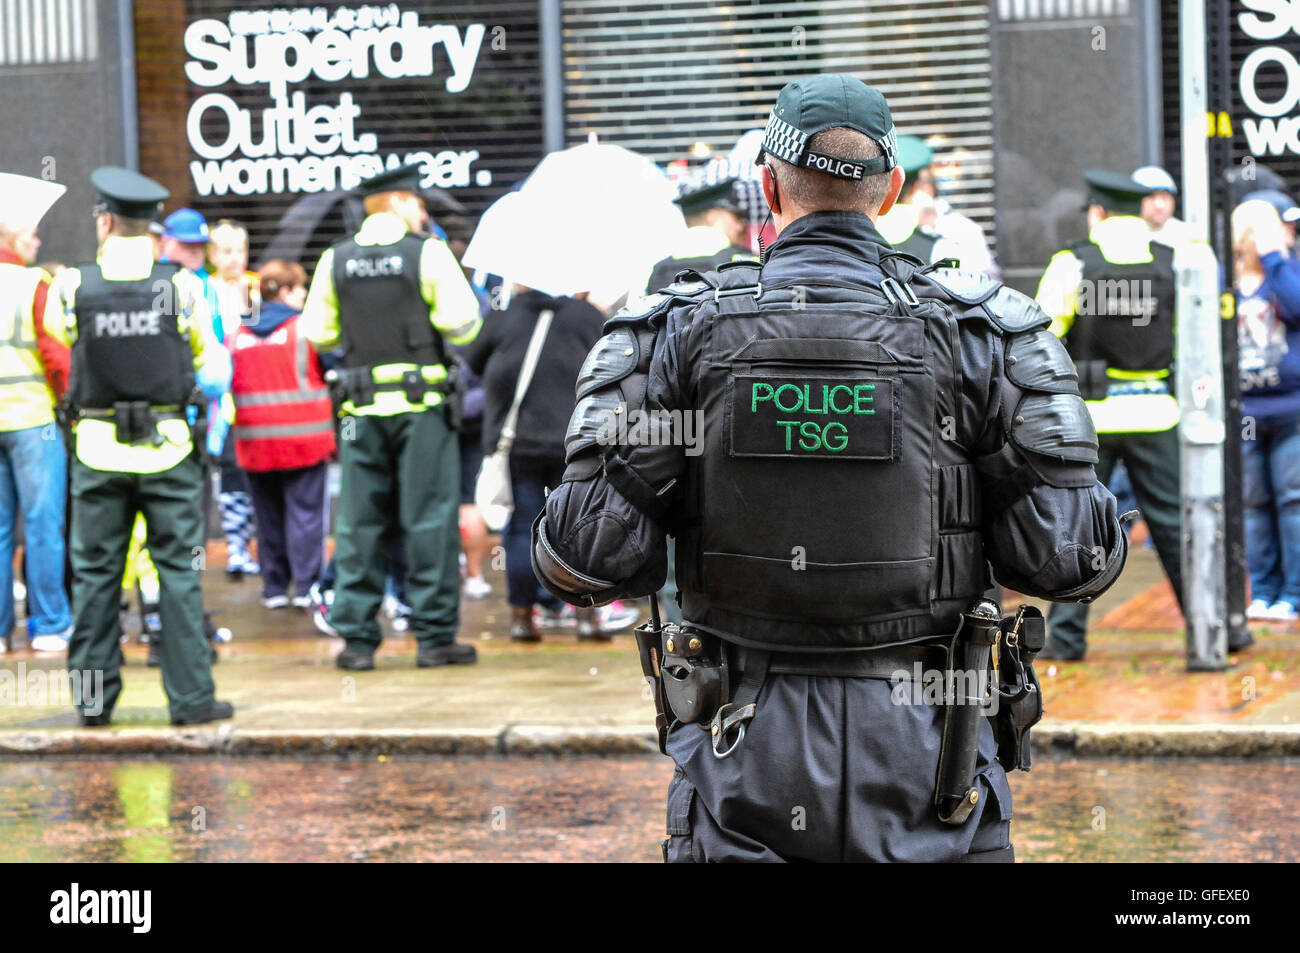 Belfast, Nordirland. 10. August 2014 - Polizeibeamte halten eine Menschenmenge unter Kontrolle, während ein Mitglied der taktischen Unterstützungsgruppe (Aufruhr) den Fortschritt beobachtet Stockfoto